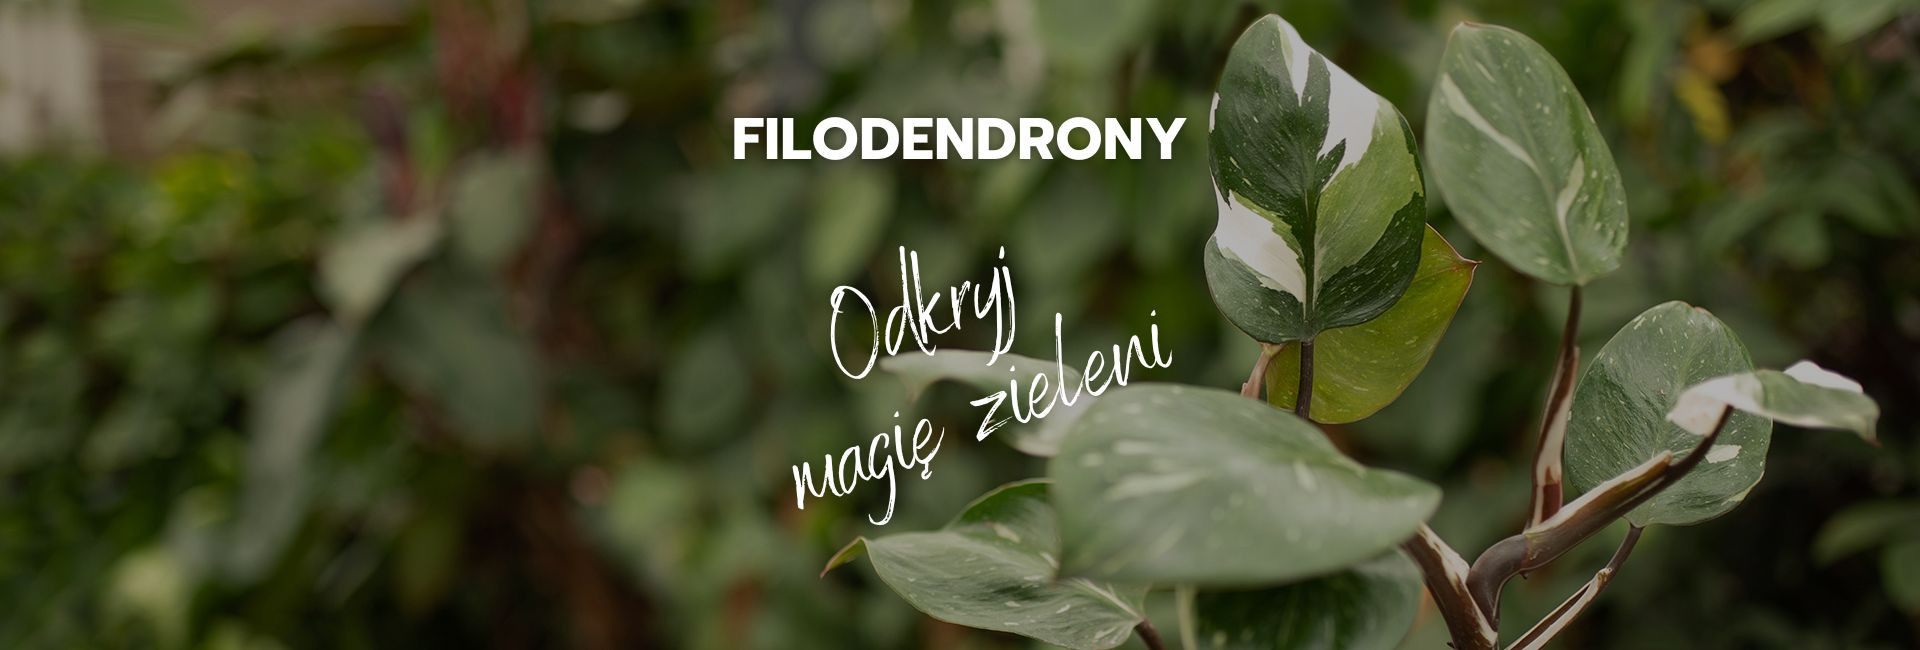 Filodendron - egzotyczna roślina doniczkowa do Twojego domu | Sklep ogrodniczy Tomaszewski